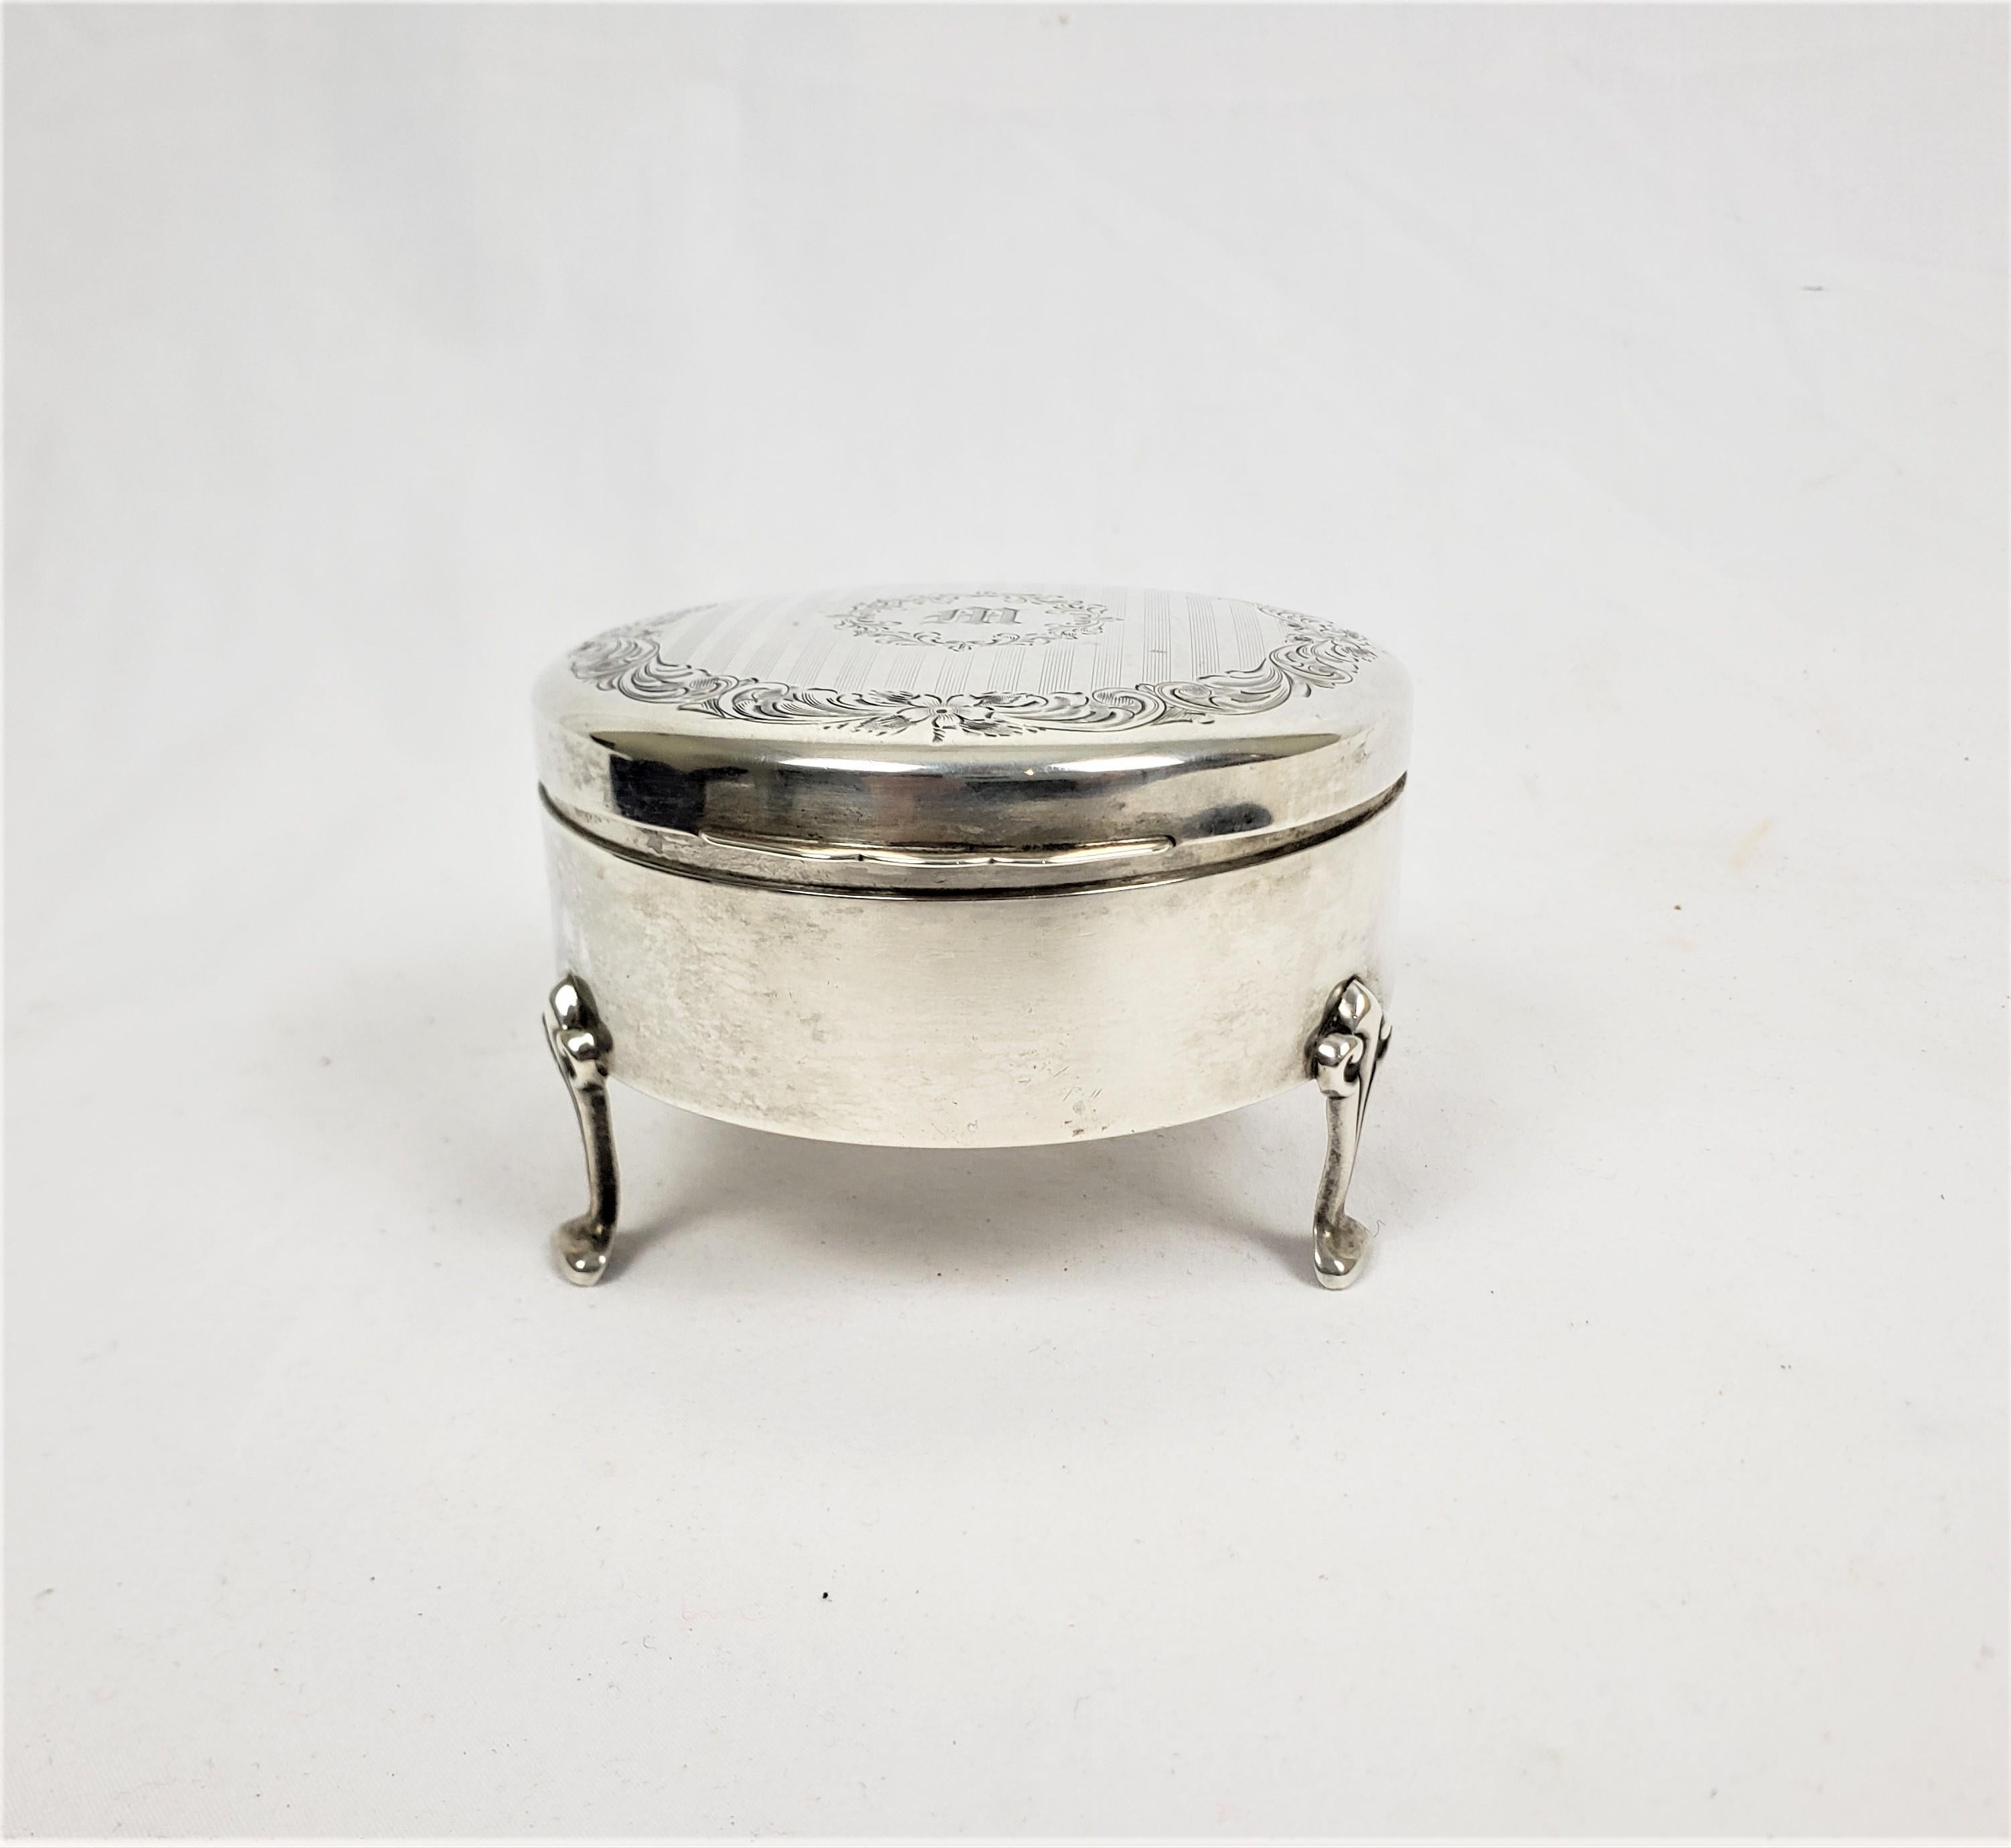 birks sterling silver ring box